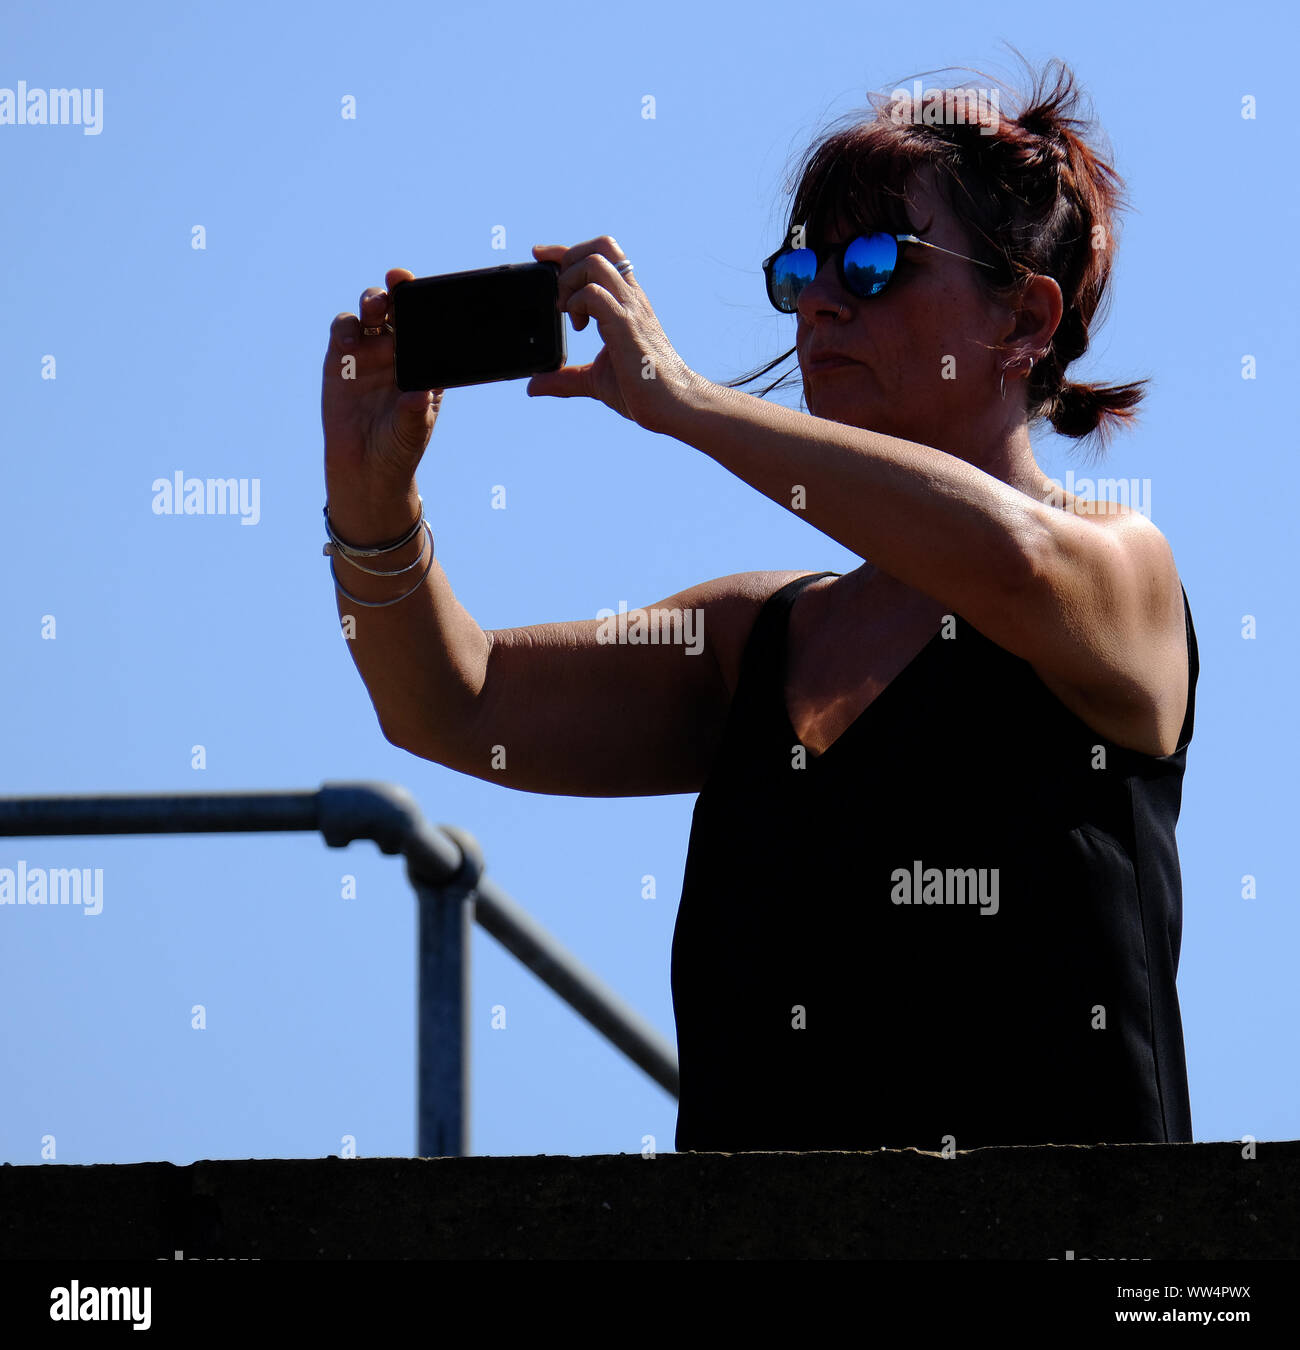 La donna nel sole luminoso tenendo fotografia con la fotocamera del cellulare. Foto Stock